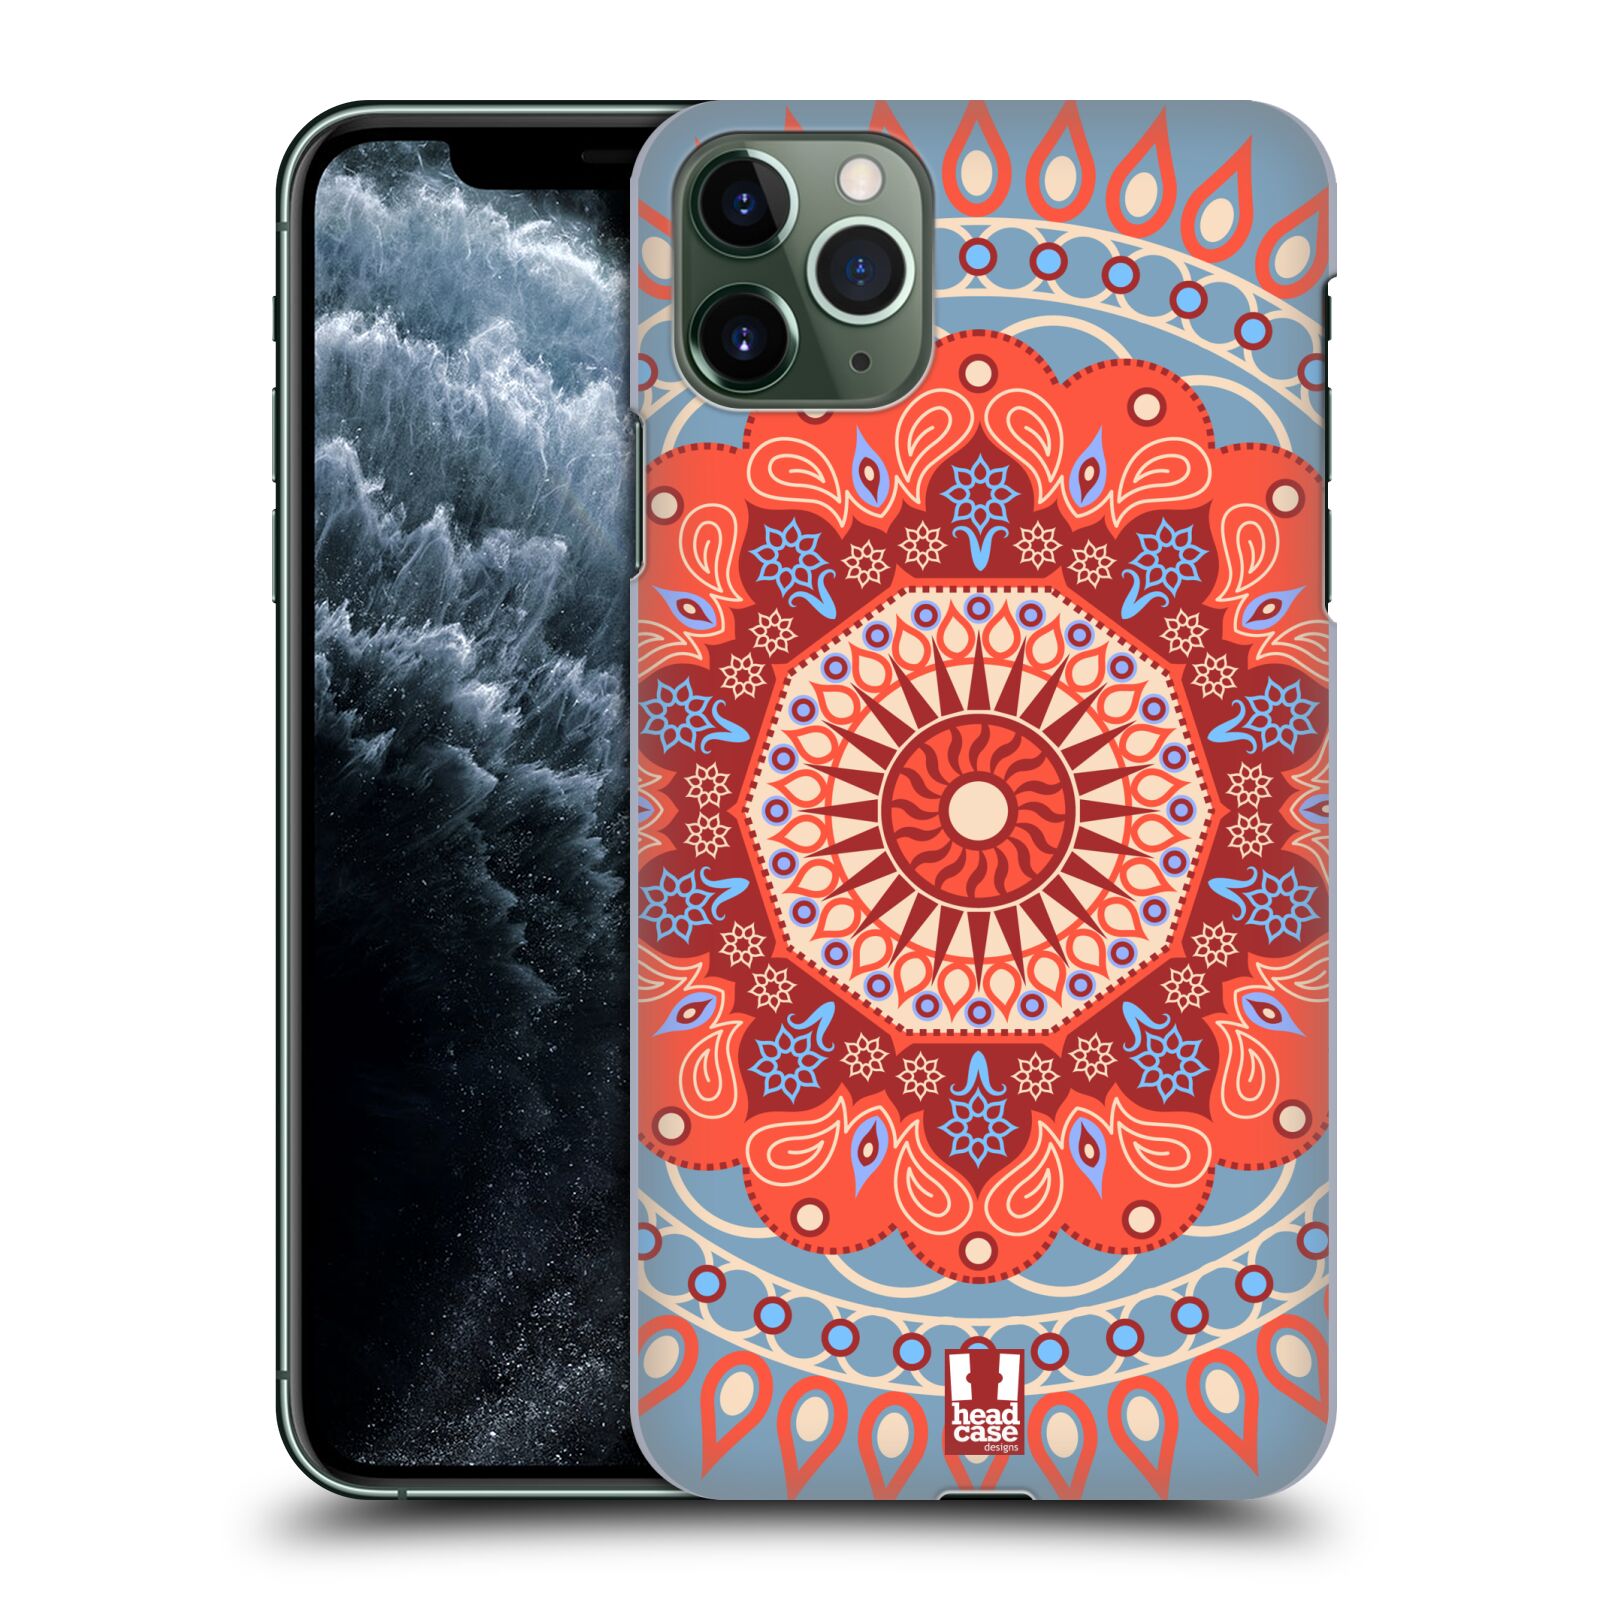 Pouzdro na mobil Apple Iphone 11 PRO MAX - HEAD CASE - vzor Indie Mandala slunce barevný motiv ČERVENÁ A MODRÁ